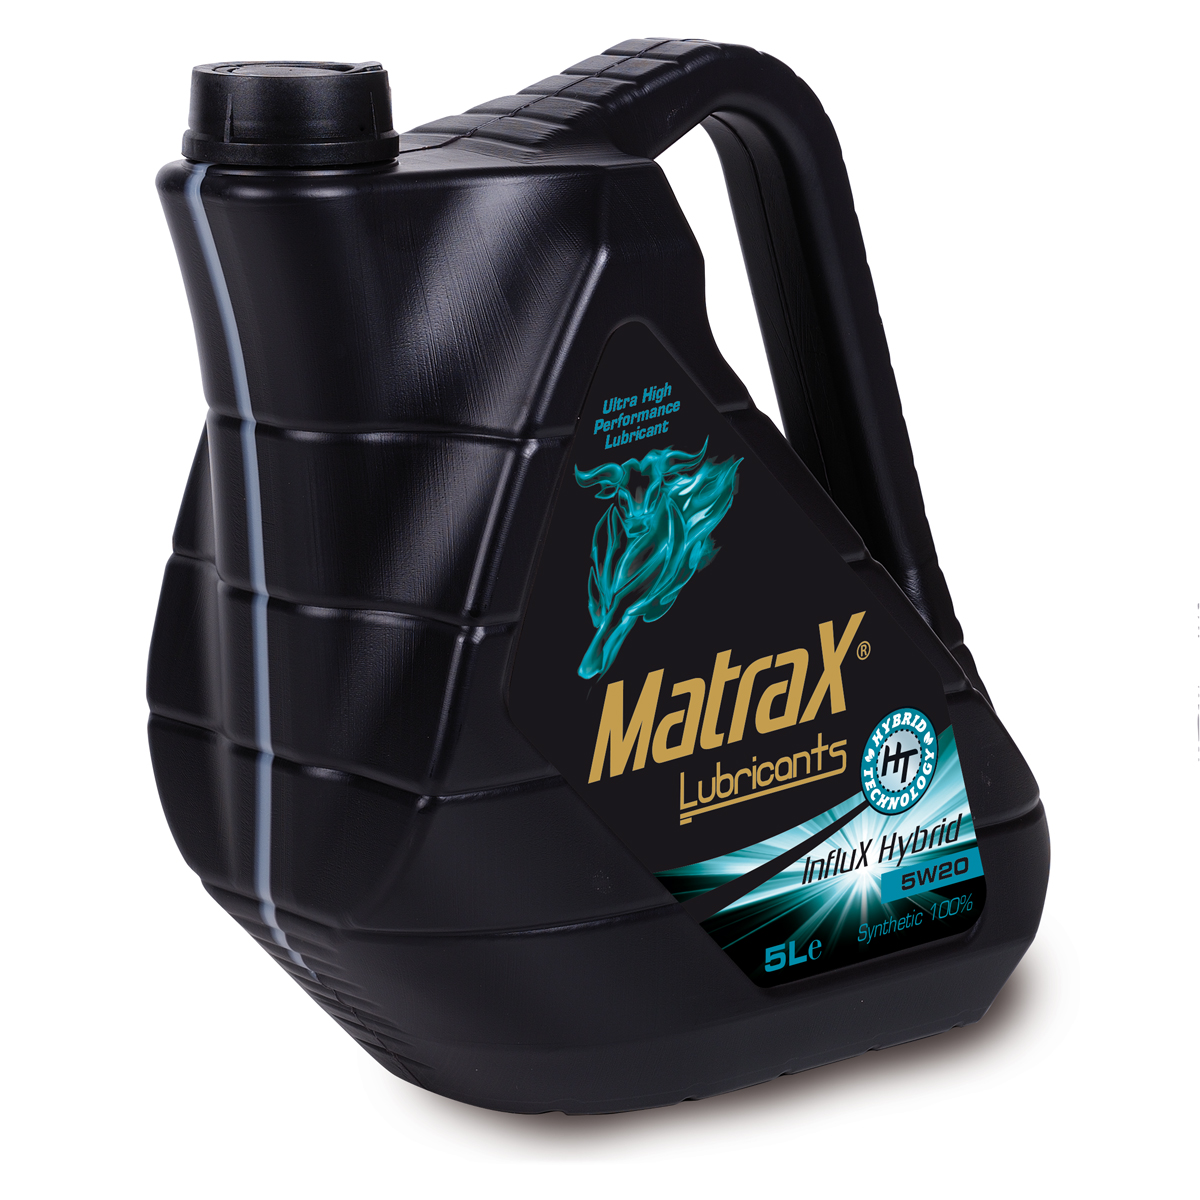 matrax-lubricants-influx-hybrid-5w20-5l